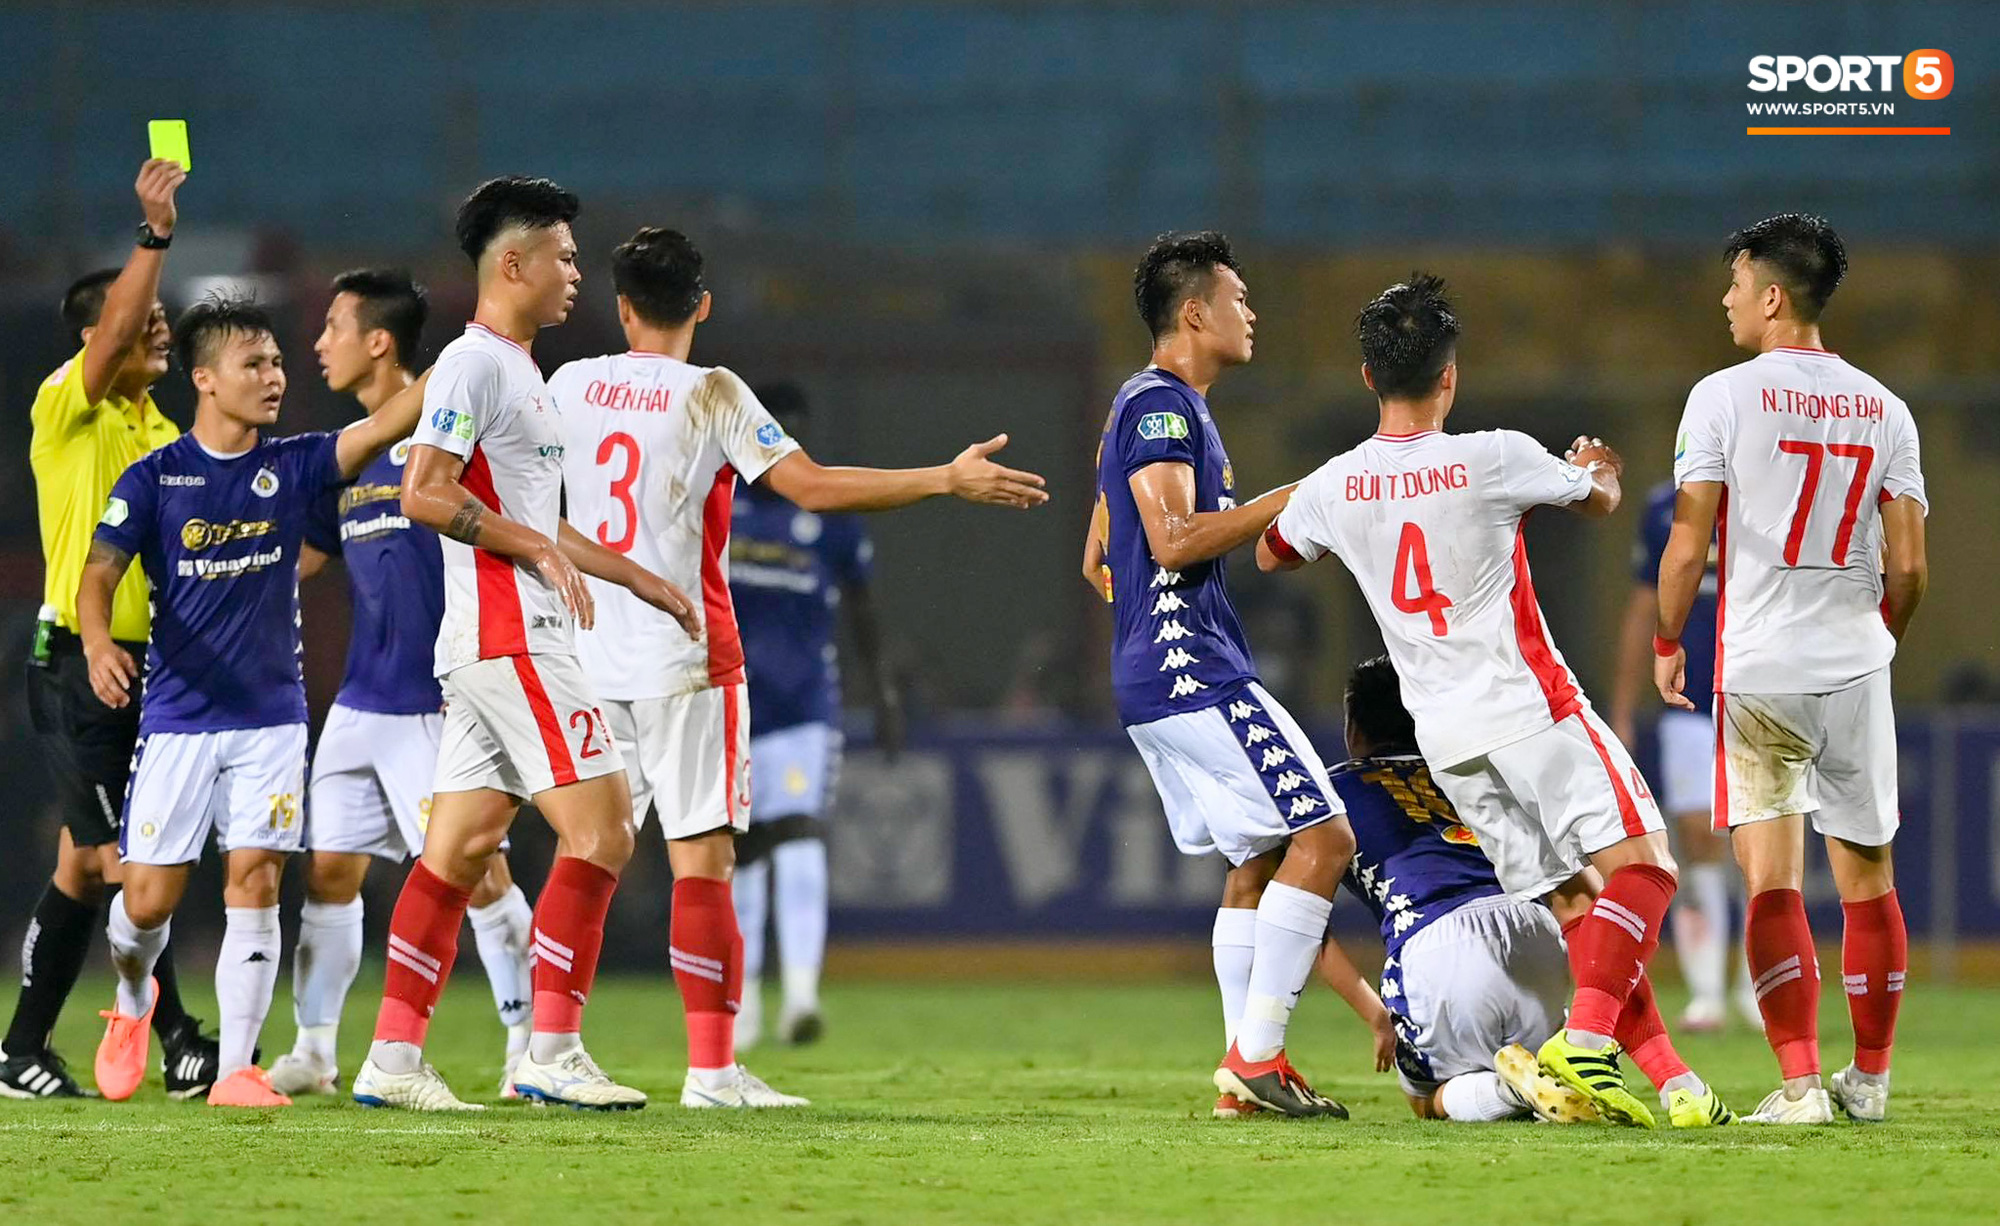 Trọng Đại hứng đầy gạch đá vì sút bóng cực mạnh vào đội trưởng Hà Nội FC nằm trên sân   - Ảnh 3.